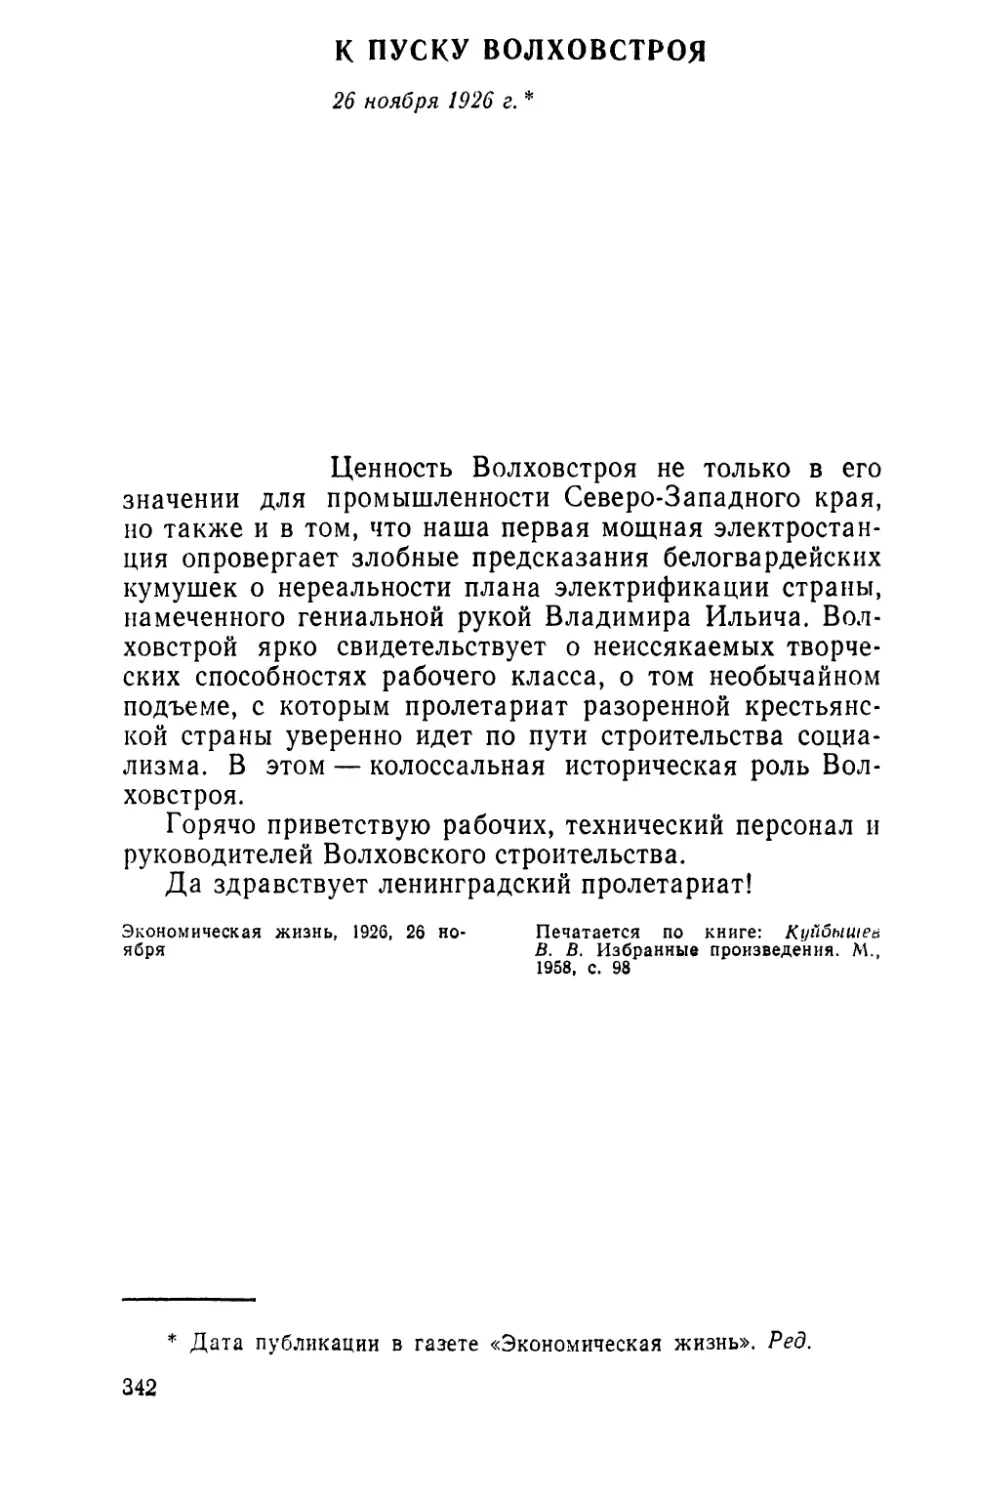 К ПУСКУ ВОЛХОВСТРОЯ. 26 ноября 1926 г.